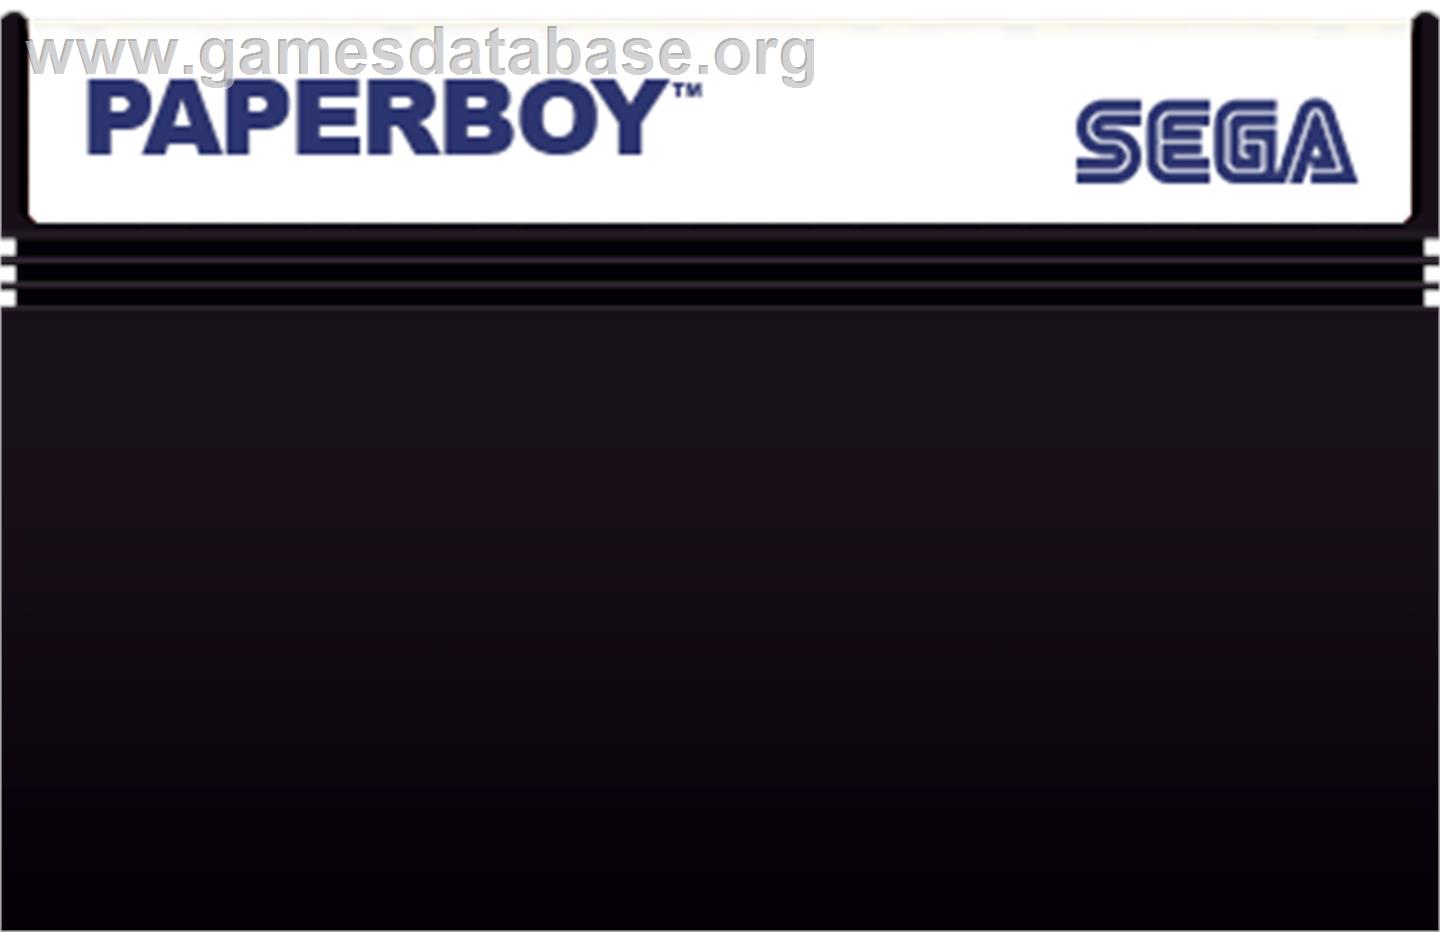 Paperboy - Sega Master System - Artwork - Cartridge